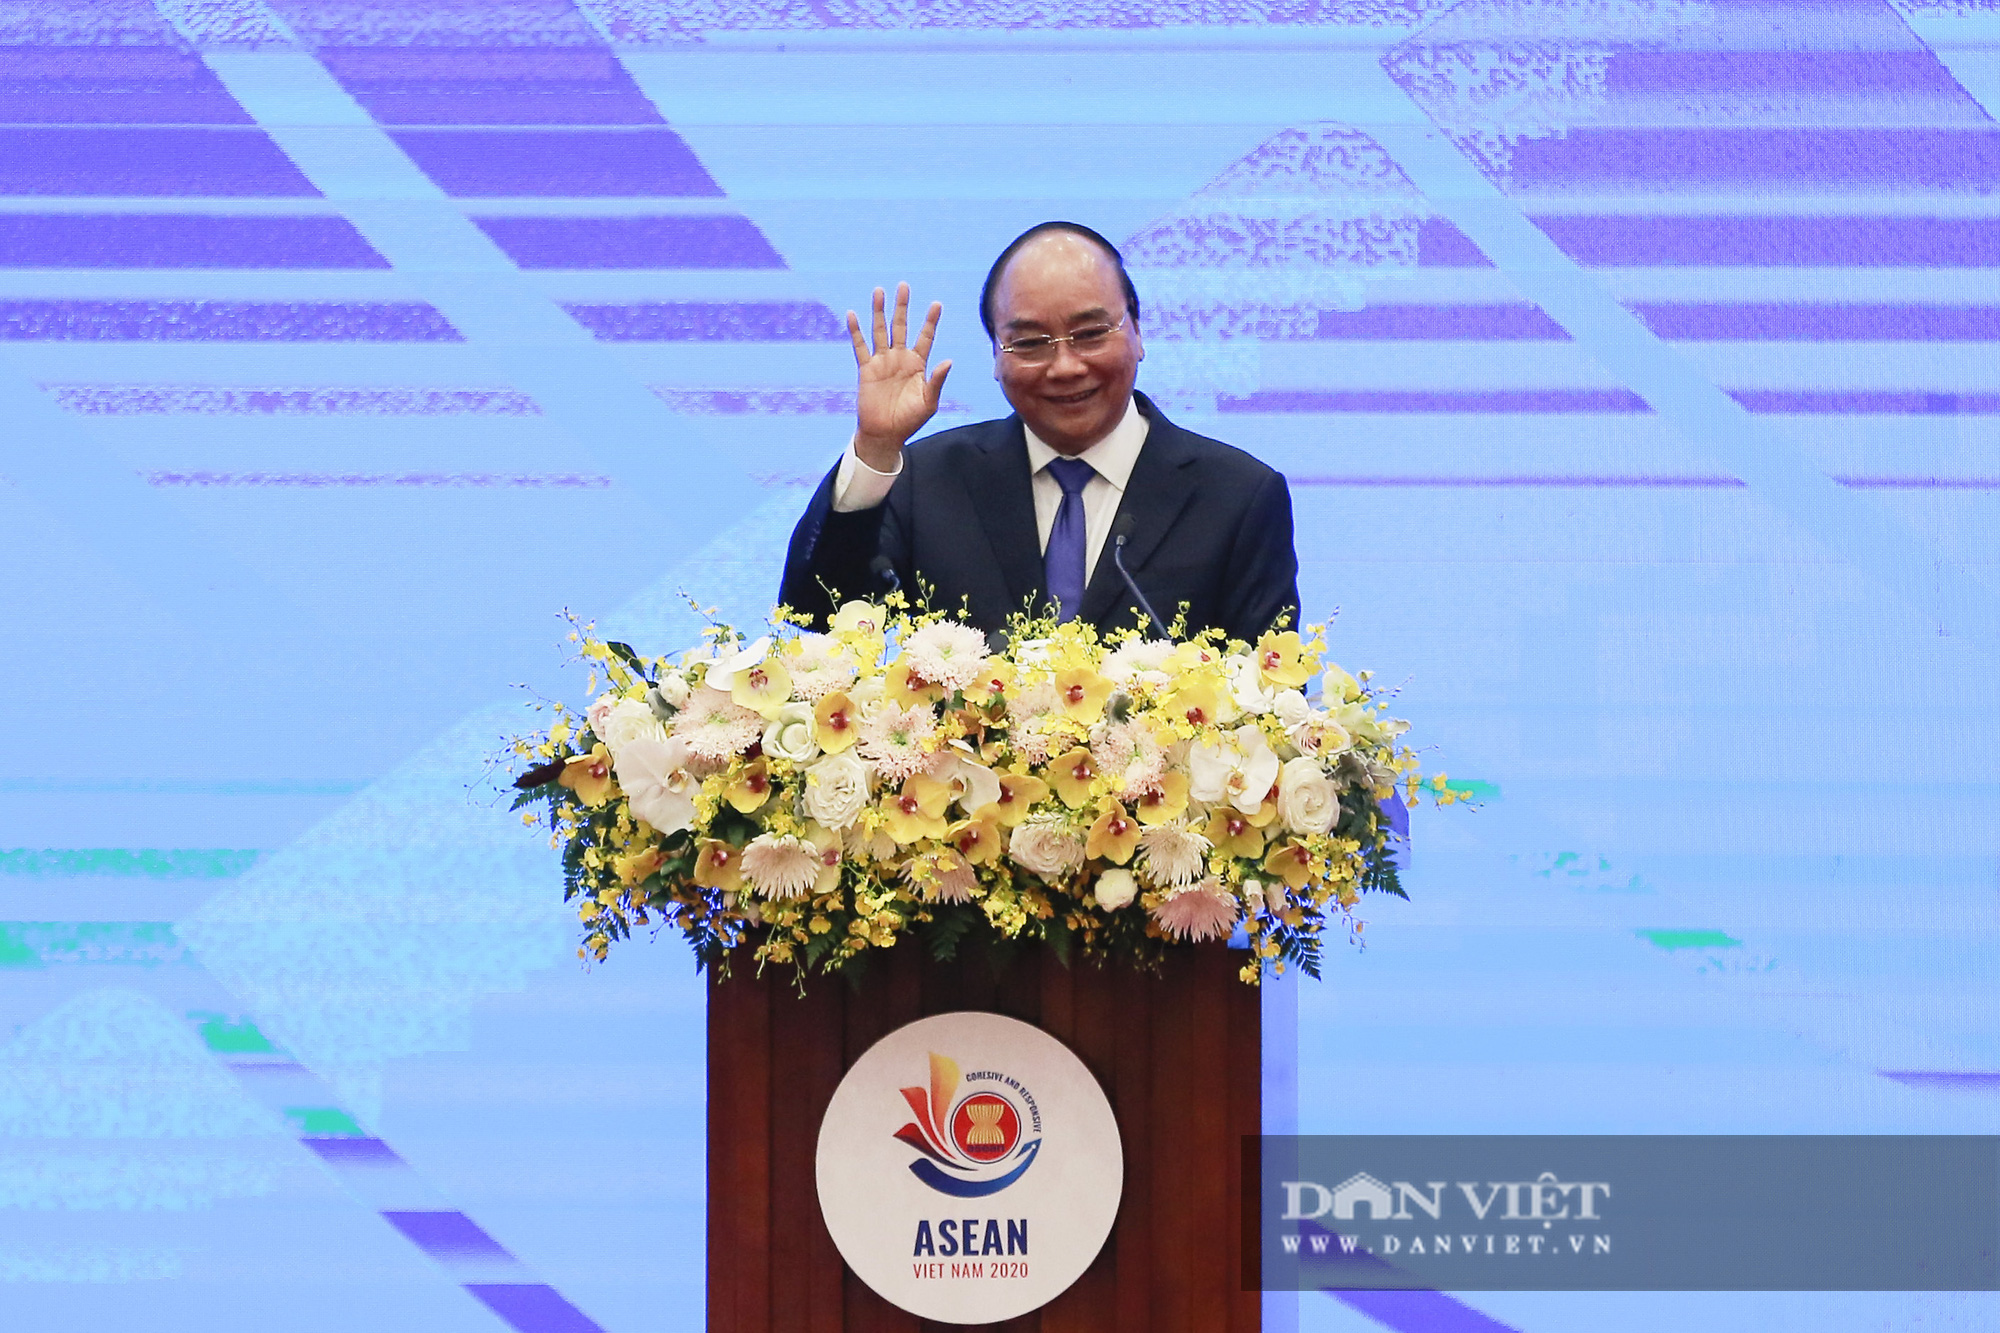 Bế mạc Hội nghị Cấp cao ASEAN 37 và chuyển giao vai trò Chủ tịch ASEAN - Ảnh 5.